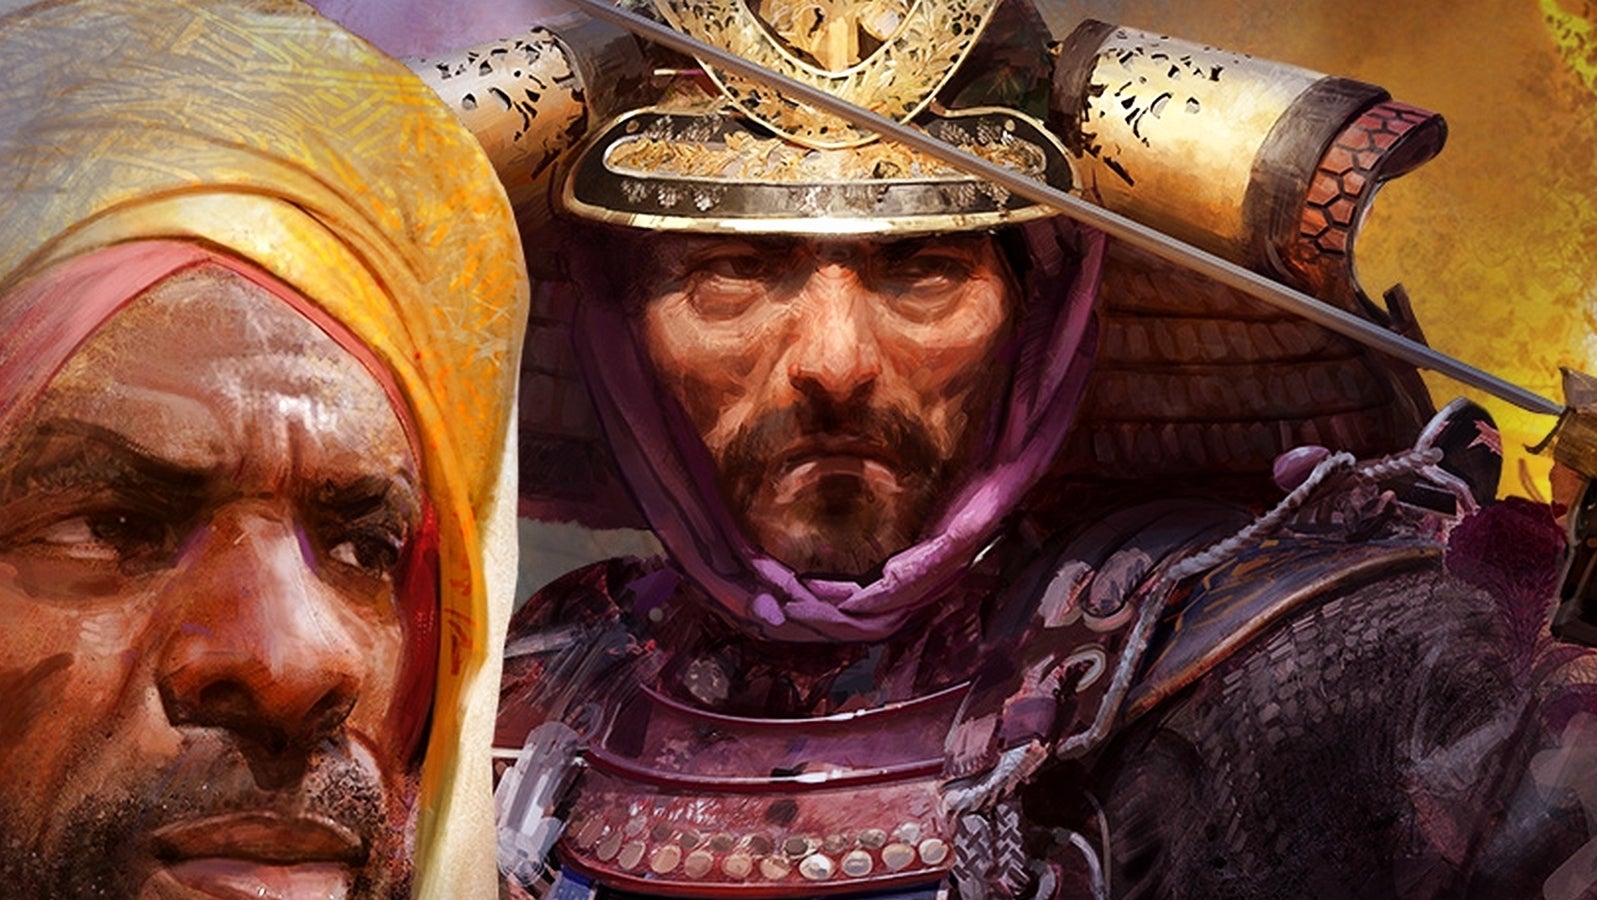 Bilder zu Age of Empires Fan Preview: Livestream mit Age of Empires 4 und mehr angekündigt